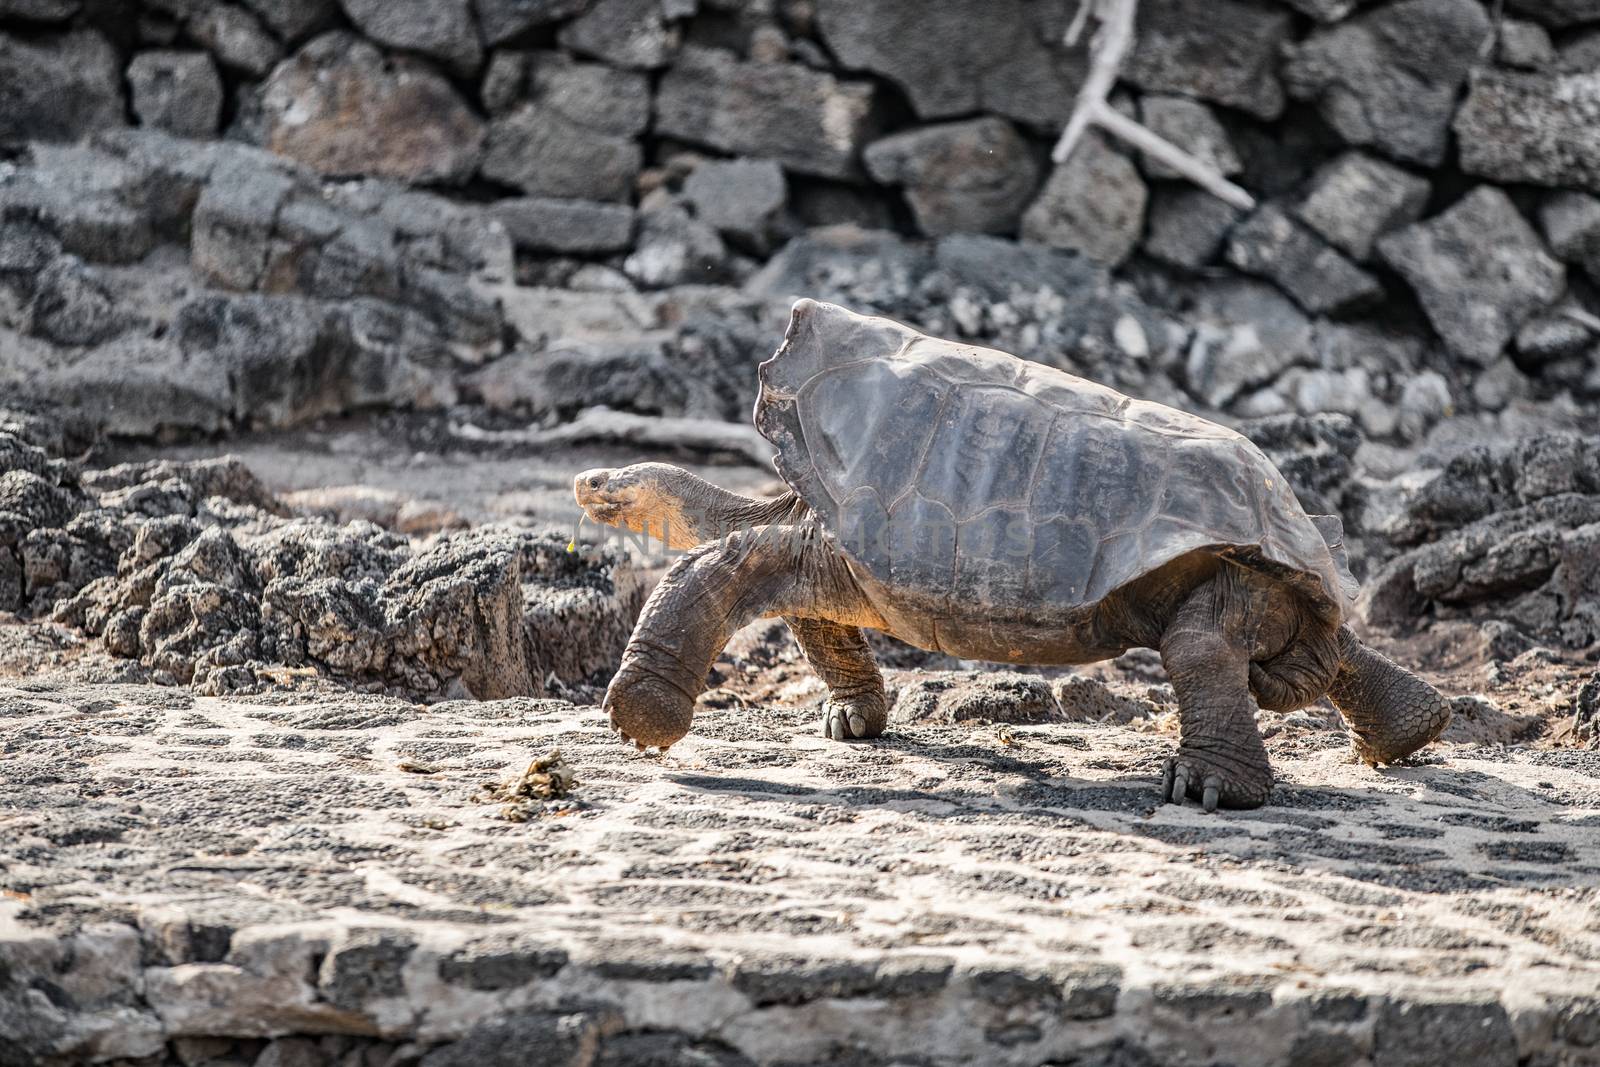 Galapagos Saddleback Tortoise aka Espanola Tortoises or latin G. Hoodensis. Amazing animals and wildlife of Galapagos Islands by Maridav